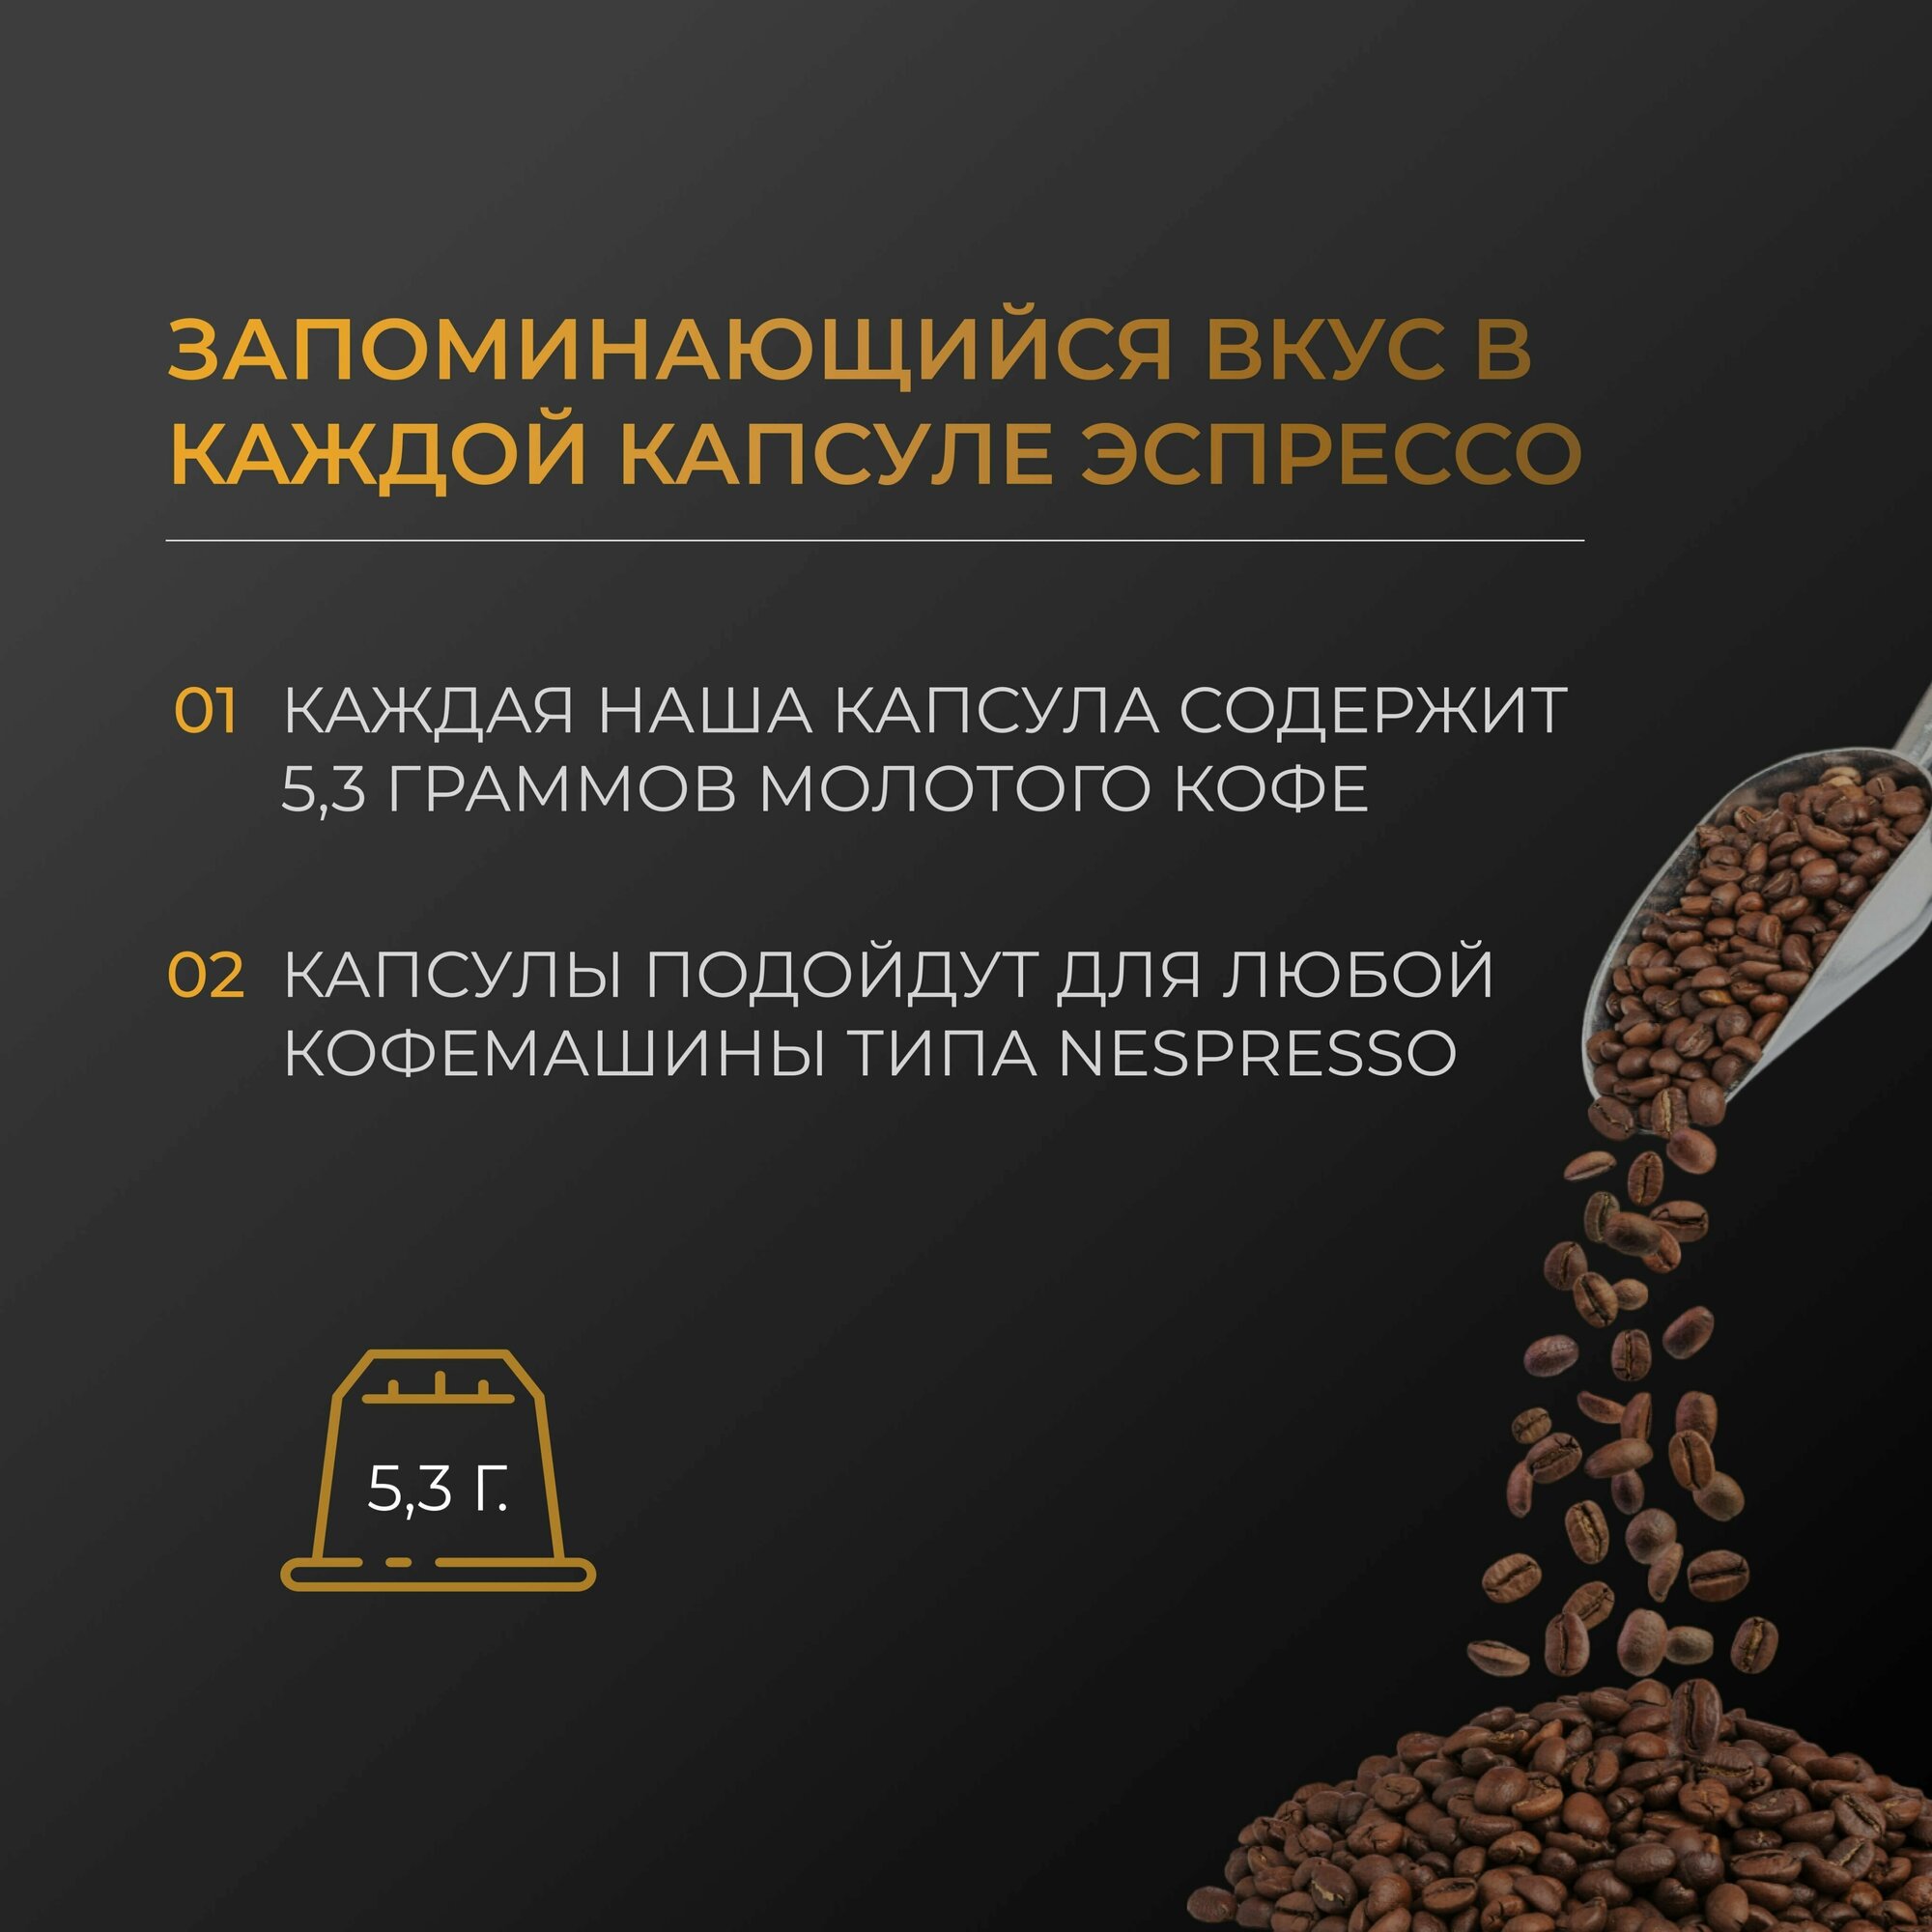 Эспрессо Арабика 100% - Капсулы Testa Rossa - 100 шт, набор кофе в капсулах неспрессо, для кофемашины NESPRESSO - фотография № 4